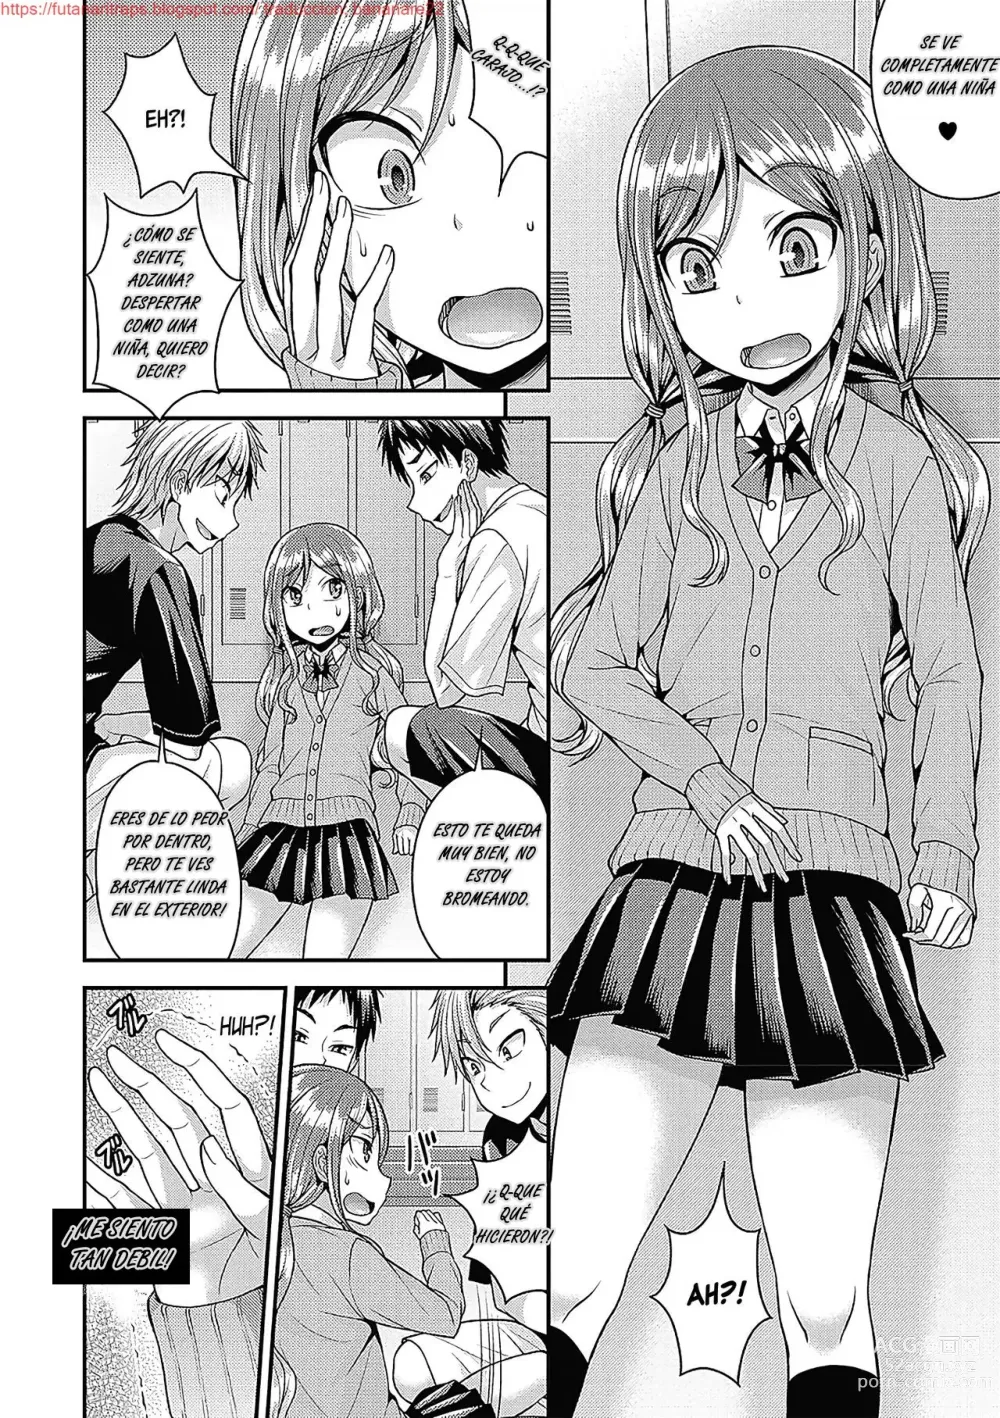 Page 6 of manga Namaiki Ichinen o Shuusei Shiro!